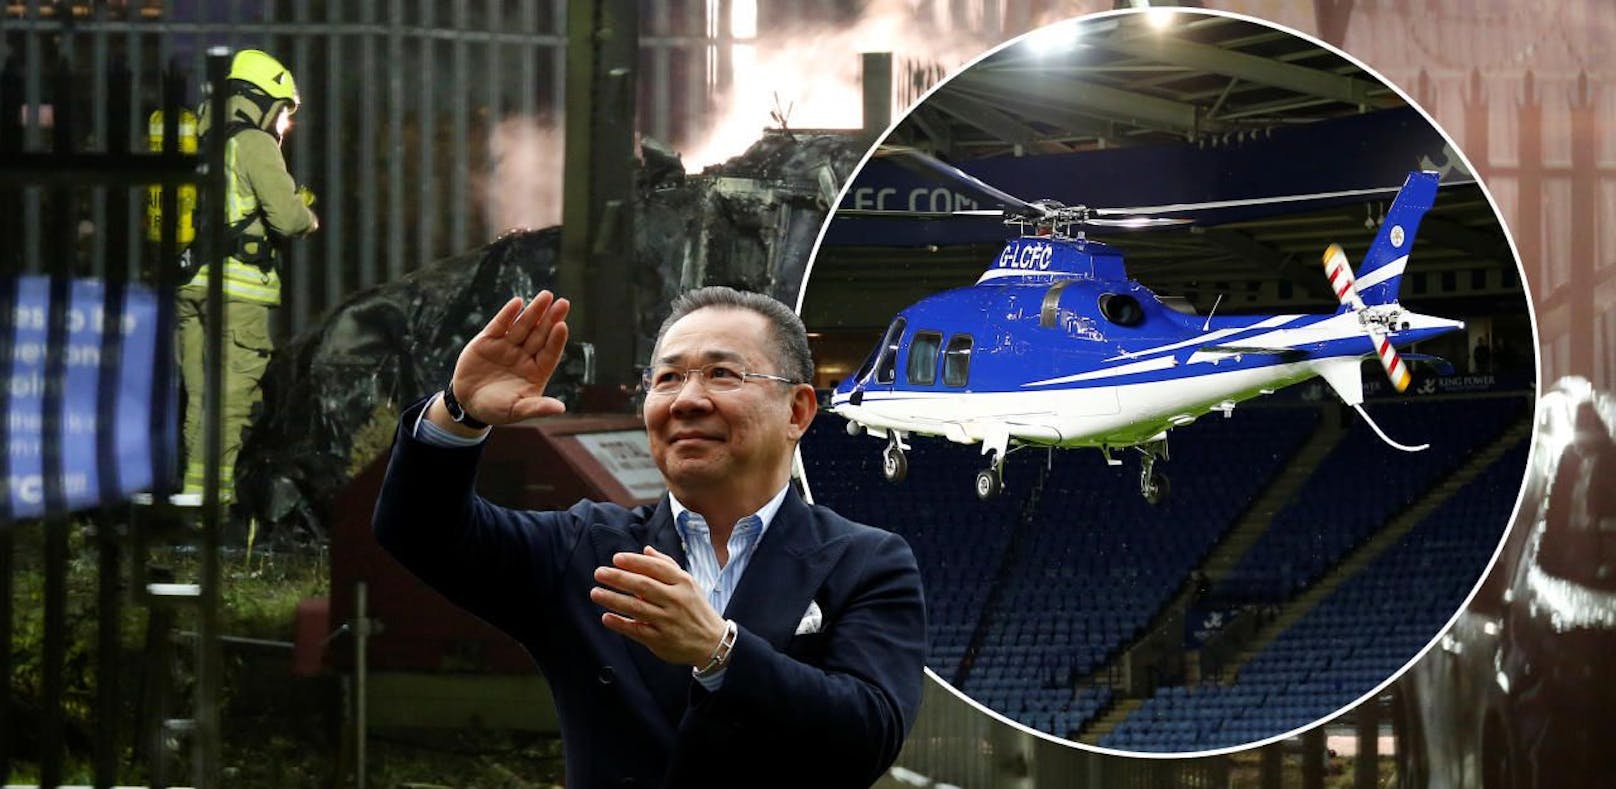 Leicester trauert nach Hubschrauber-Absturz